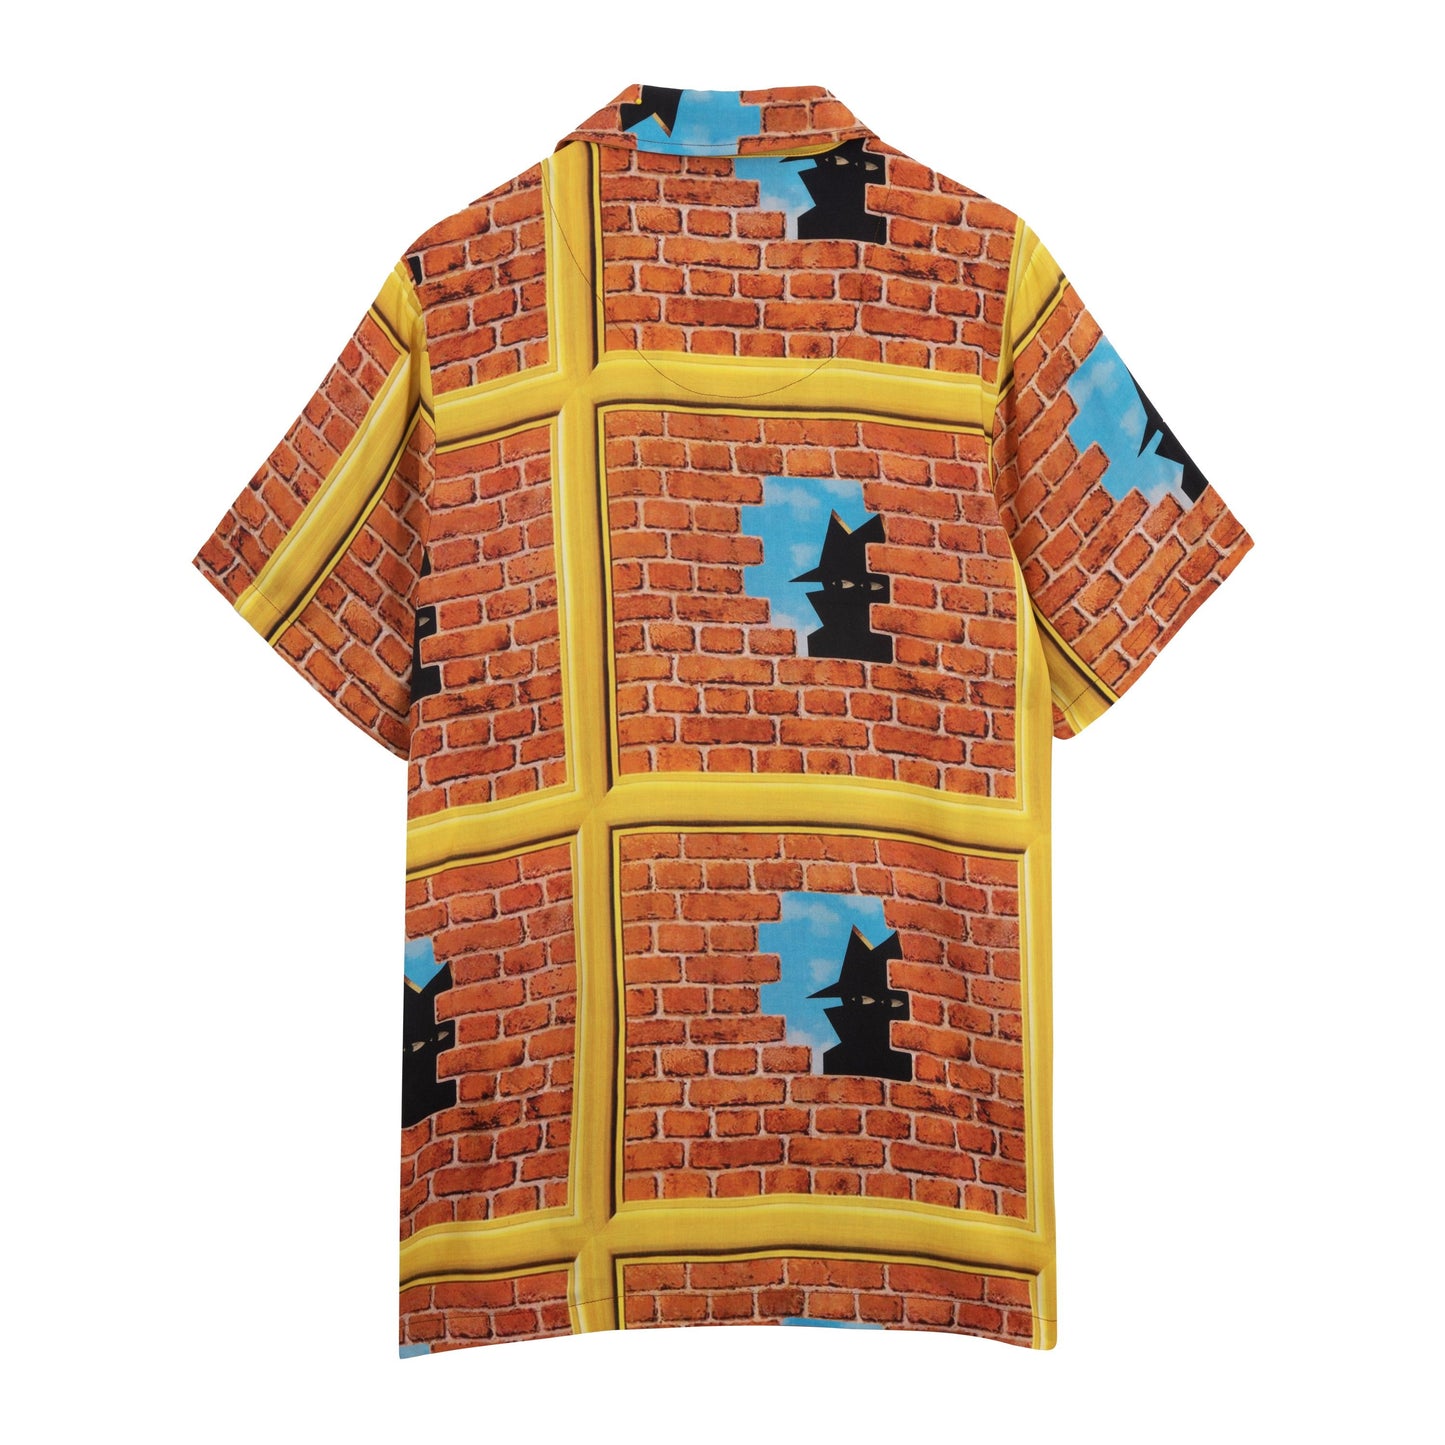 Real Bad Man "Getaway Vacation Shirt" M - Brick